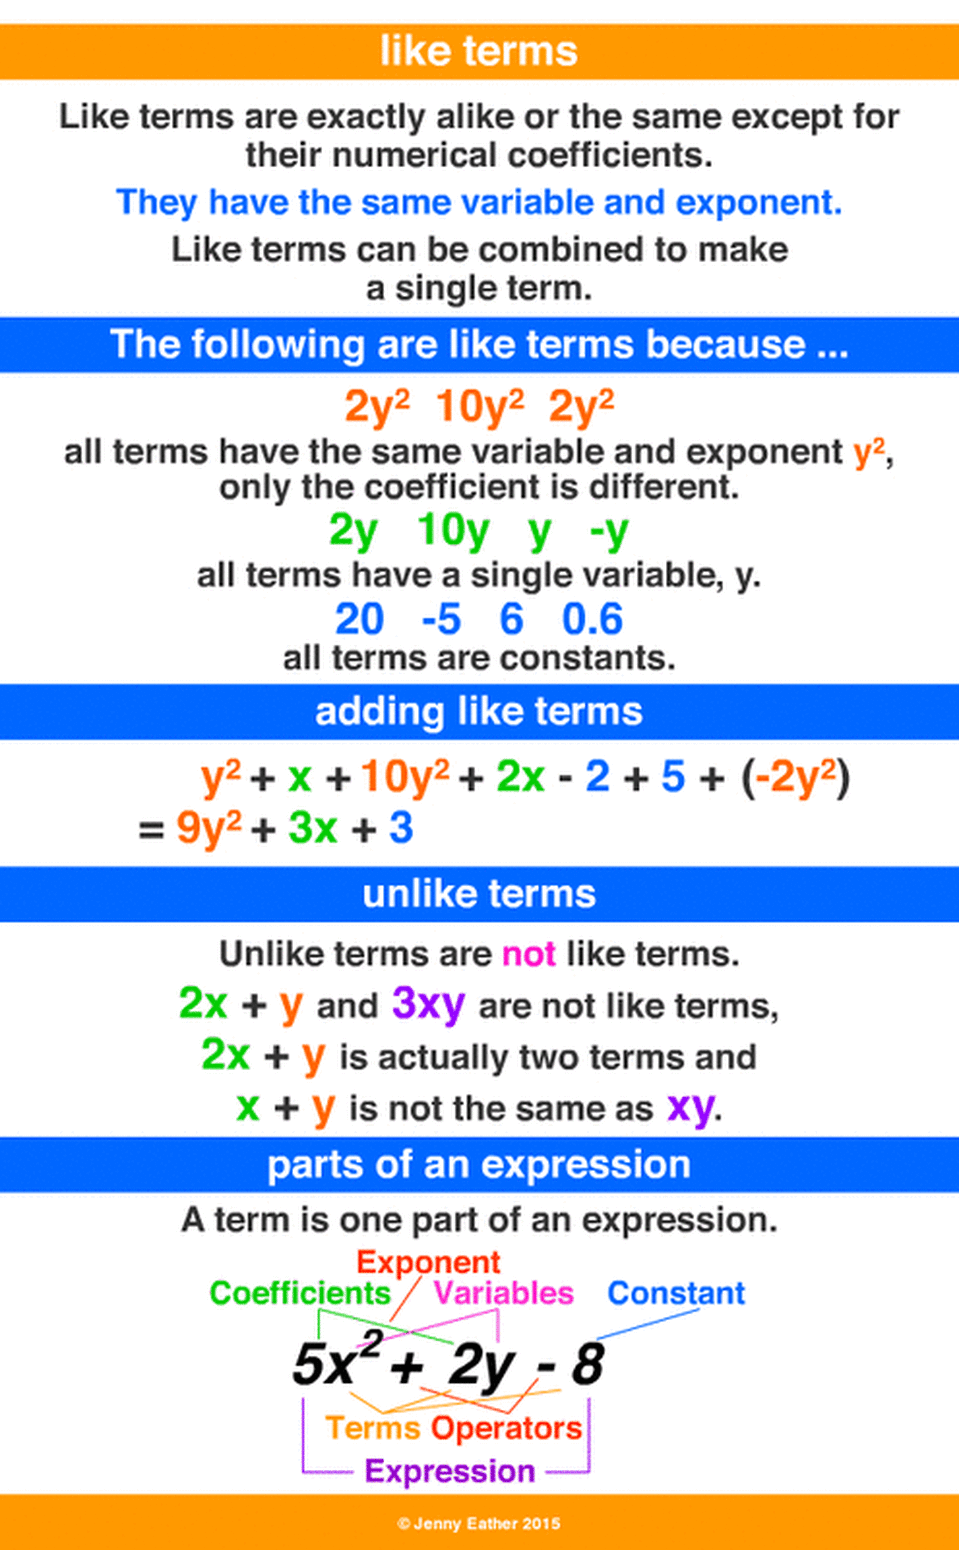 25-ratio-algebraic-expression-gif-expression